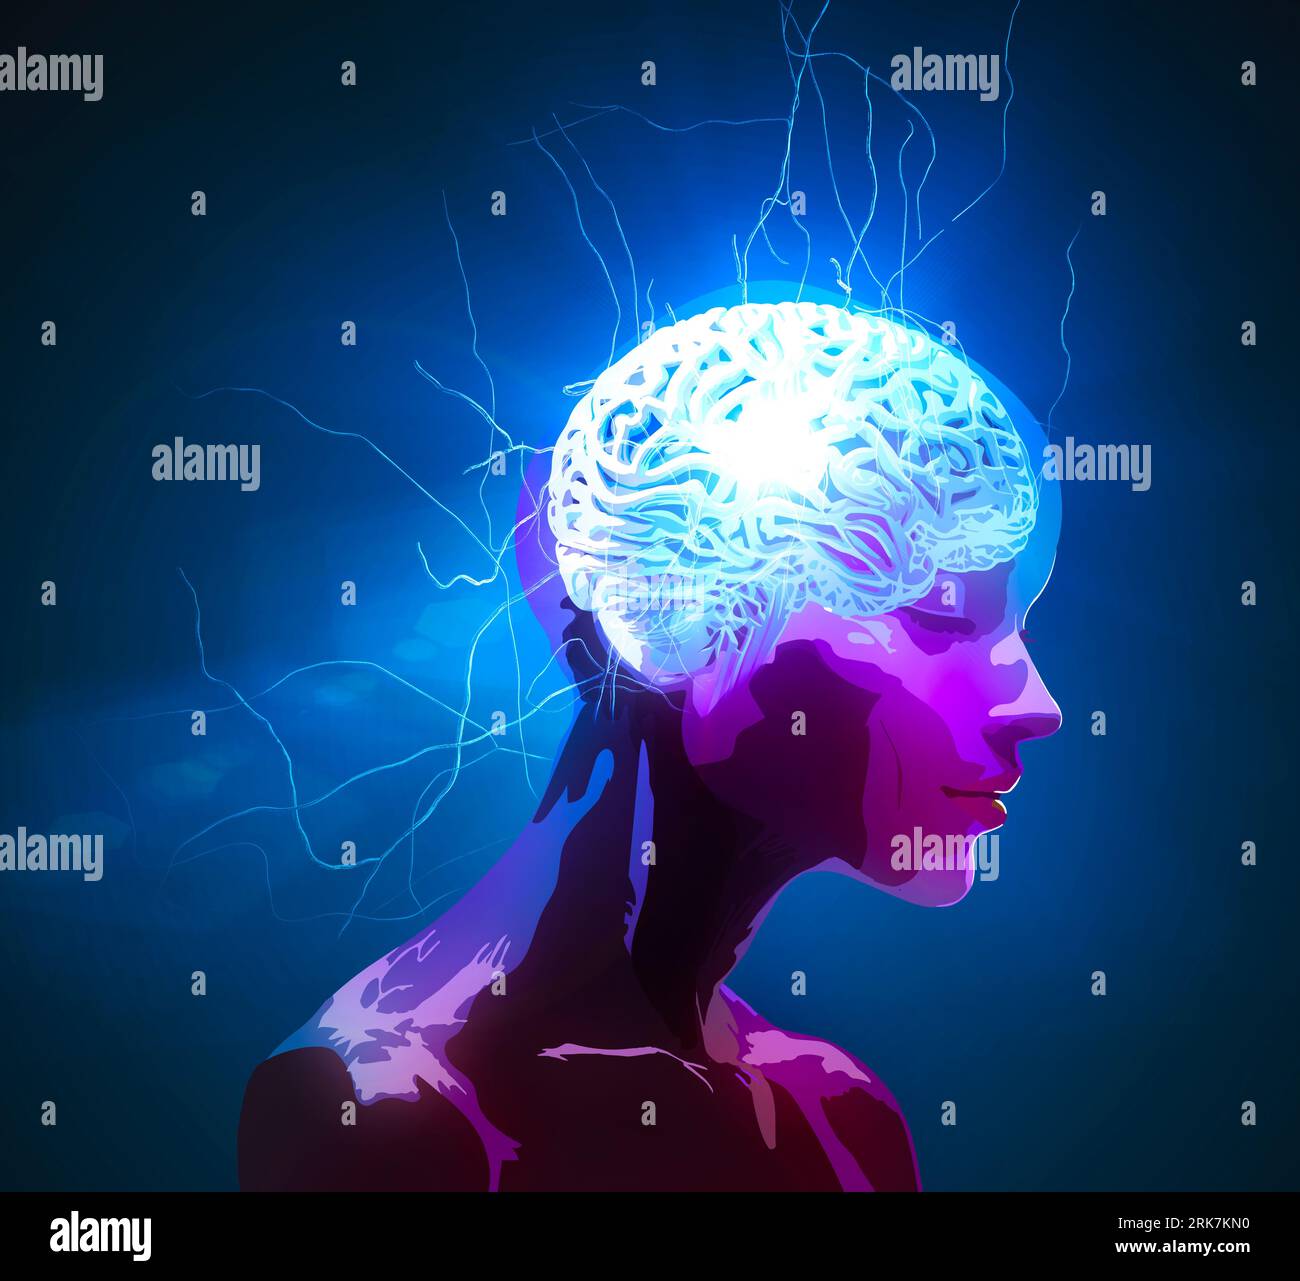 Neurologia, filosofia: Connessioni, sviluppo del pensiero e della riflessione, possibilità infinite del cervello e della mente. Anatomia umana. Foto Stock